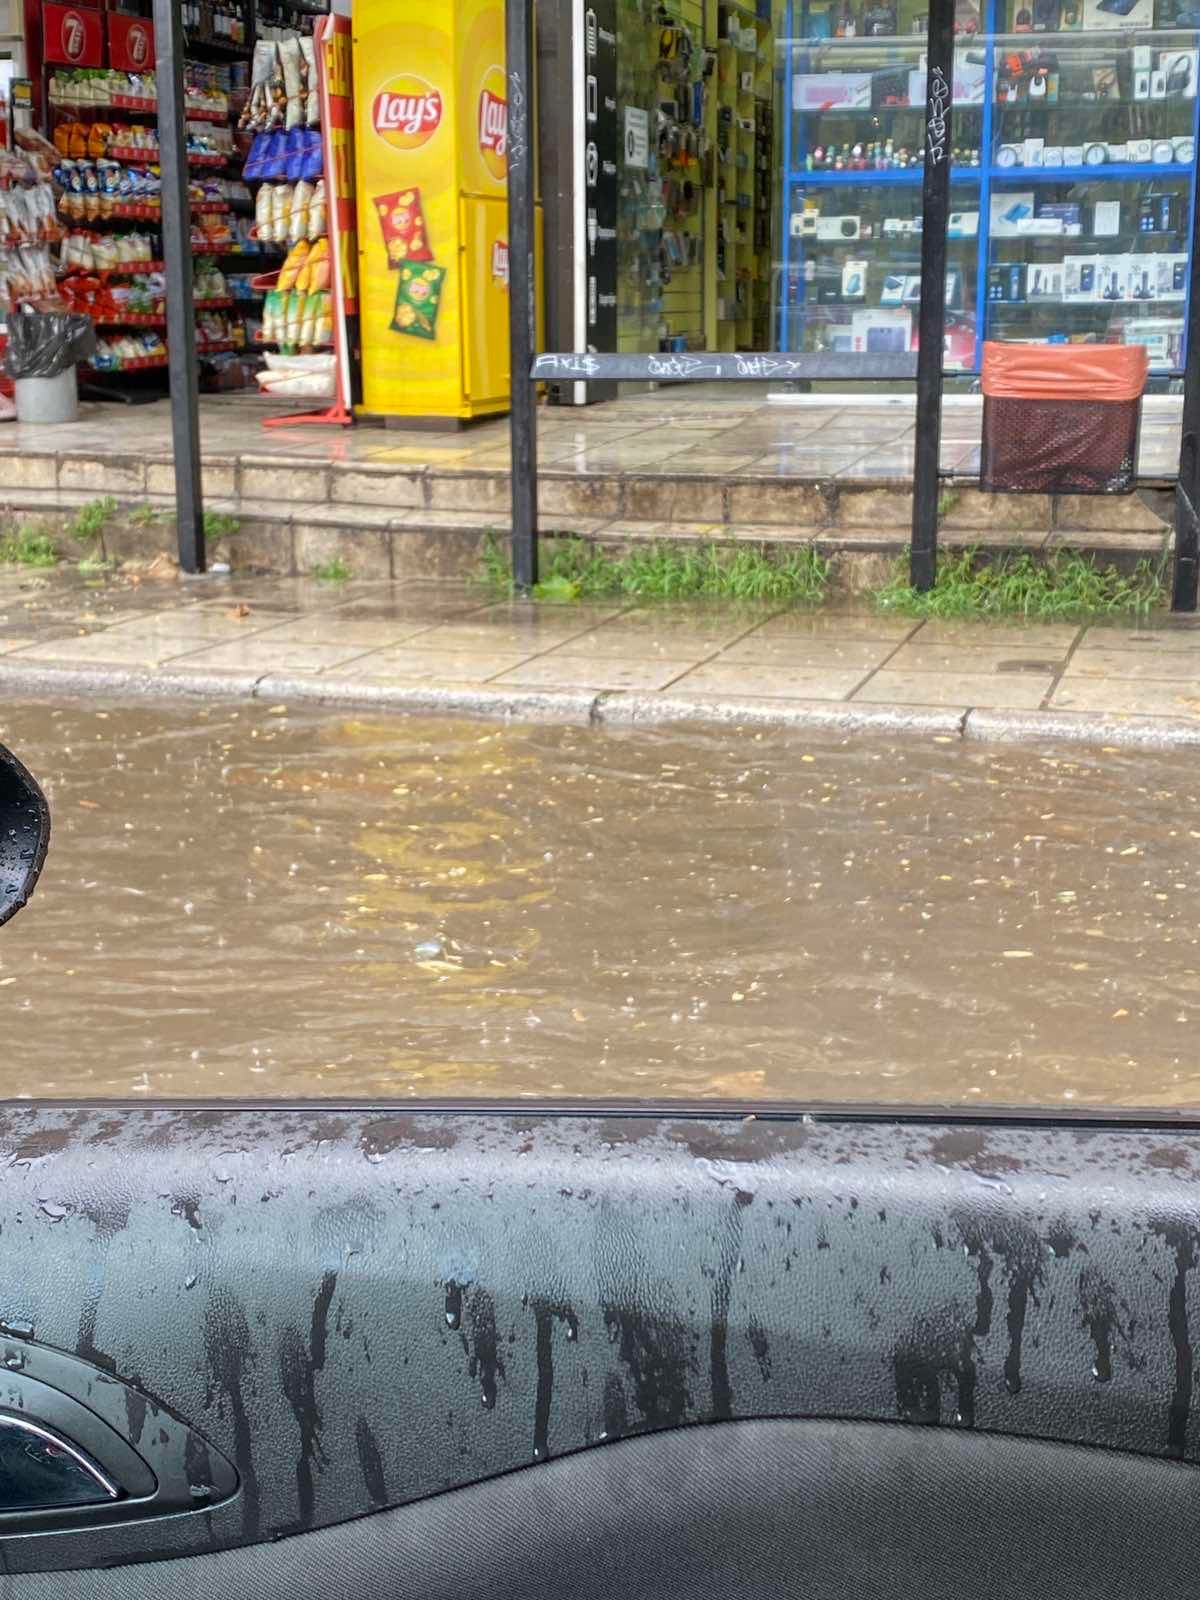 Θεσσαλονίκη: Μέσα σε 5 λεπτά βροχόπτωσης πλημμύρισαν δρόμοι (Video)